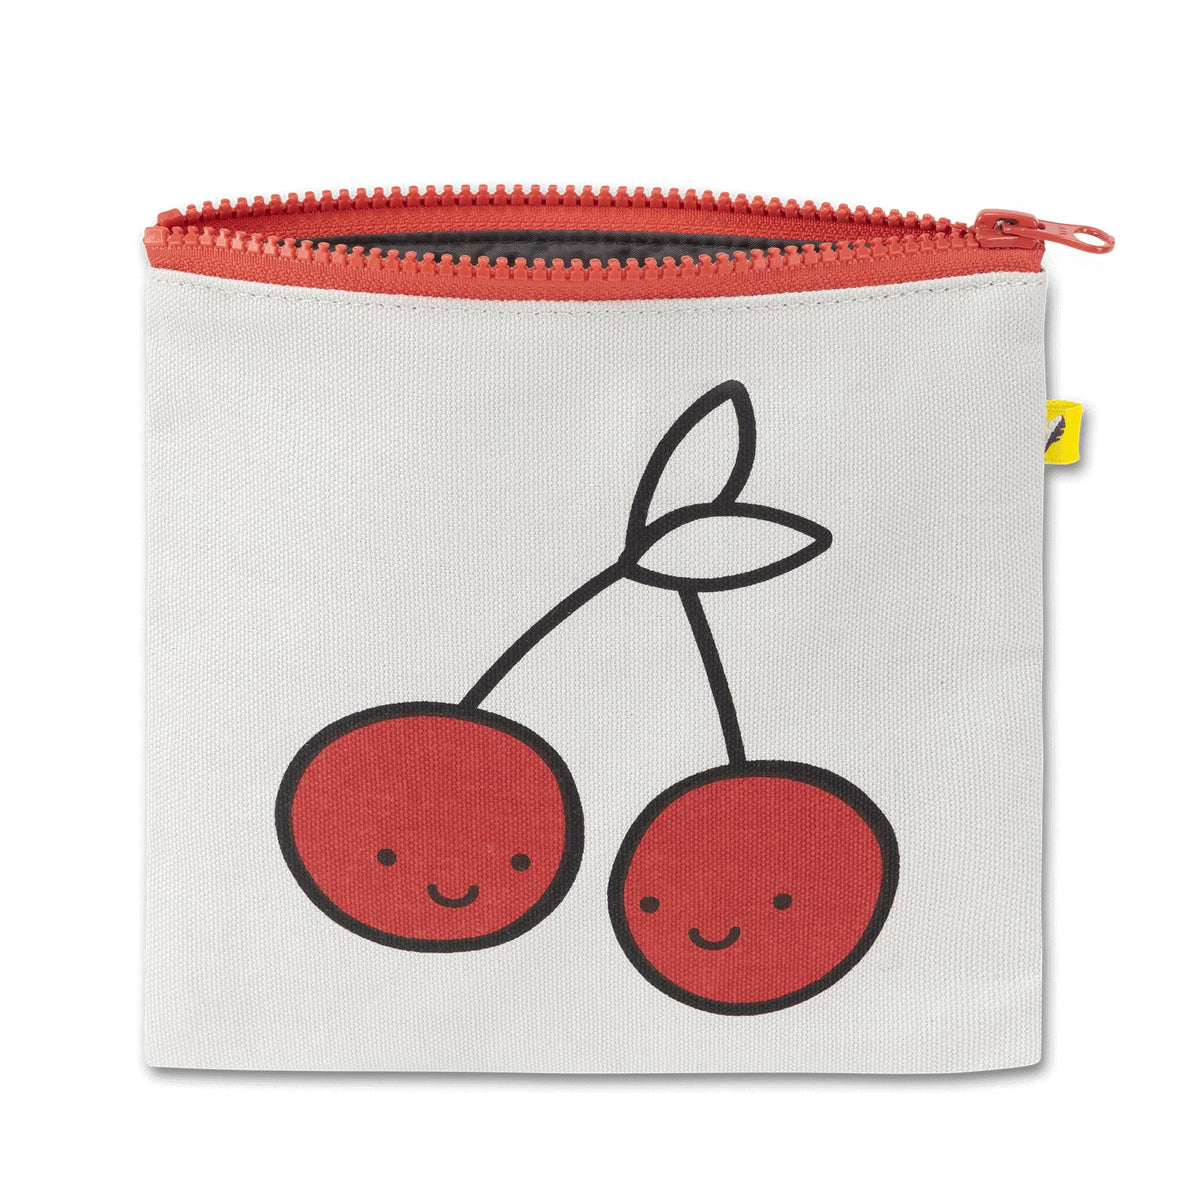 Zip Snack Bag - Cherries Red (Sandwich Size)